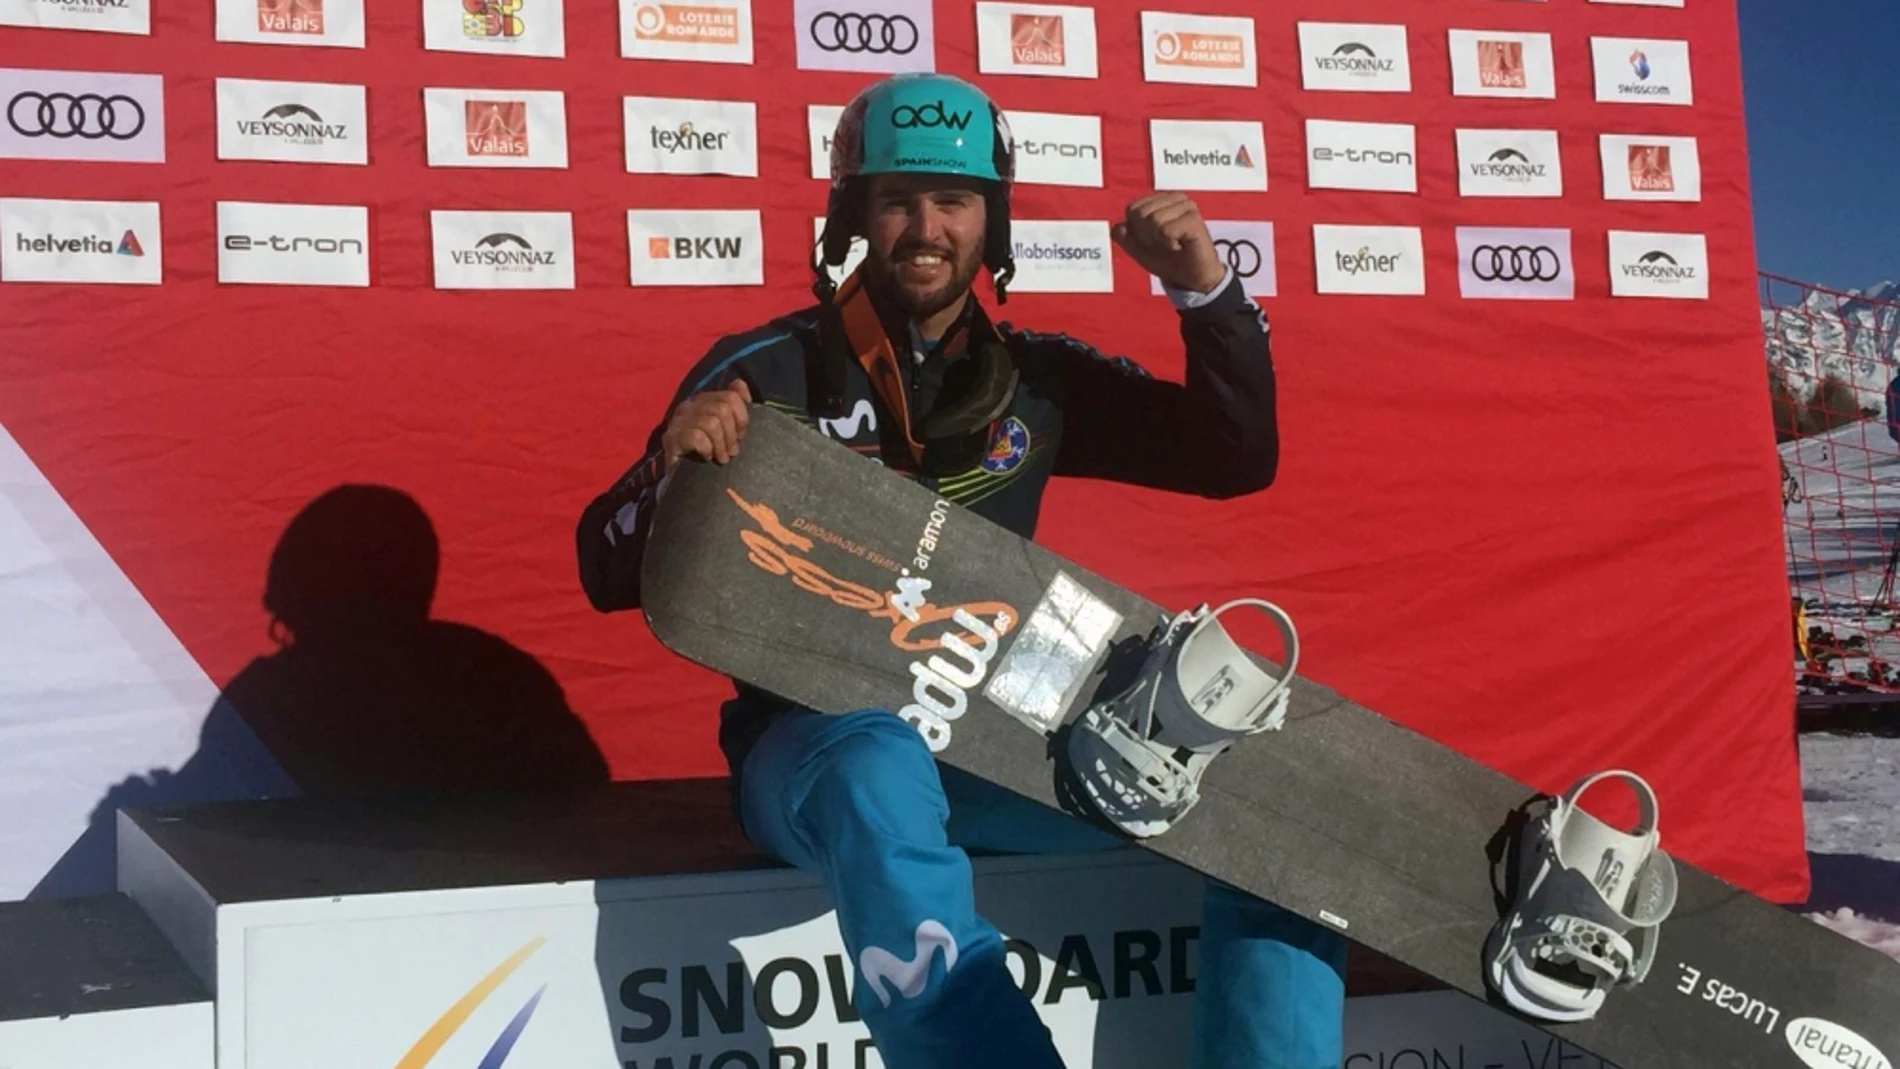 Lucas Eguibar en el podio tras su victoria en la Copa del Mundo de snowboardcross de Veysonnaz (Suiza) / RFEDI